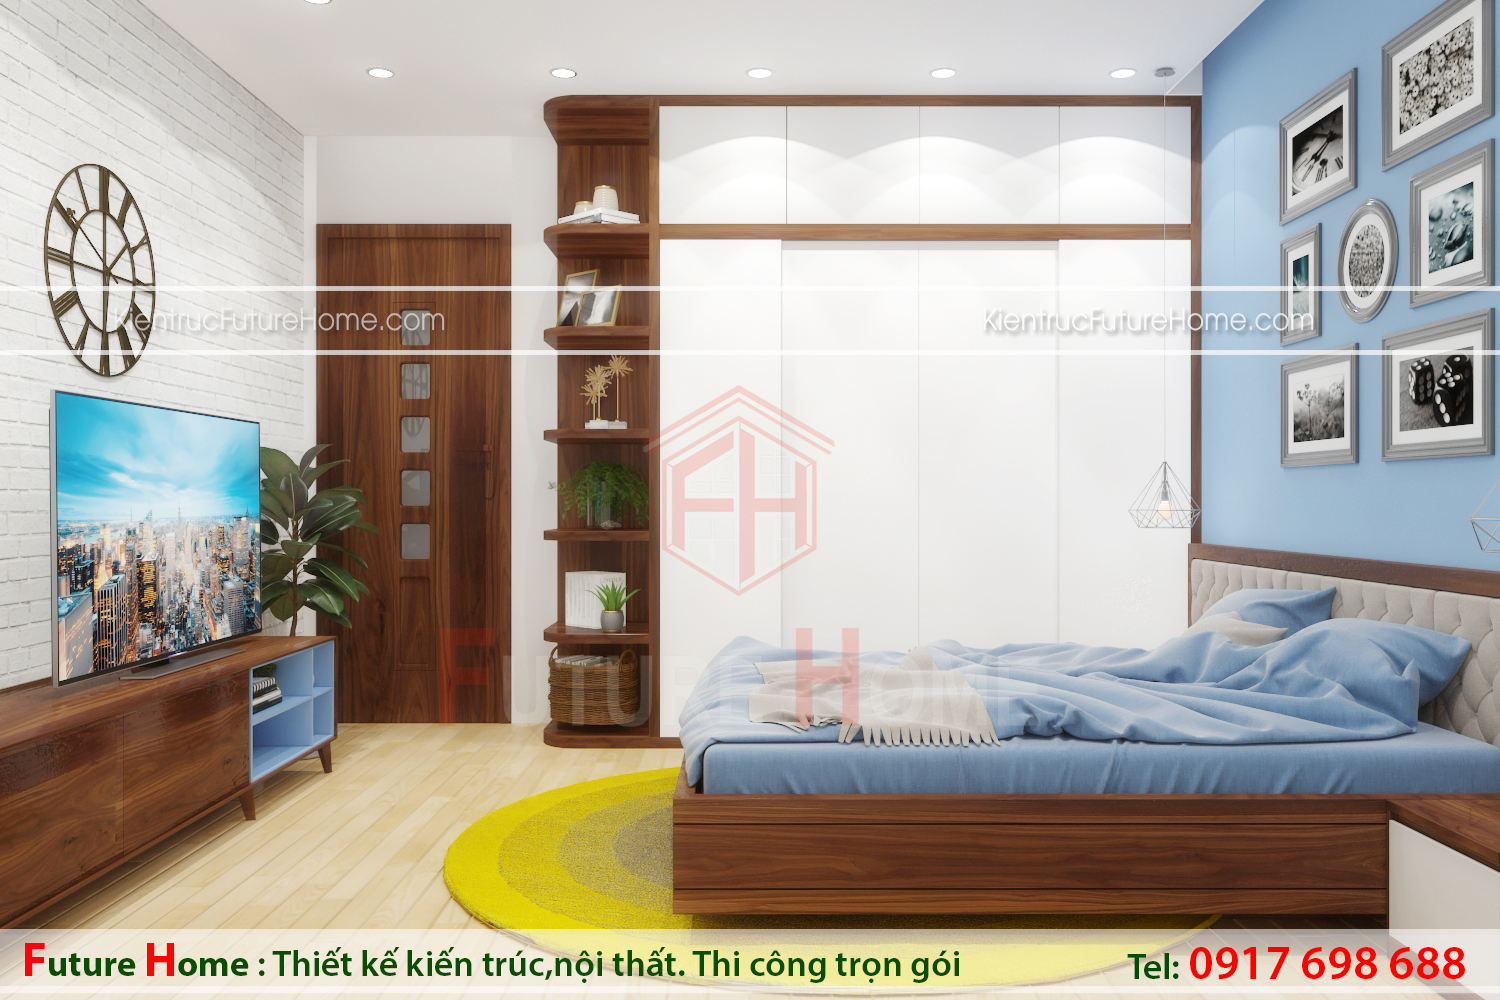 Thiết kế nội thất hiện đại cho phòng ngủ của con trai